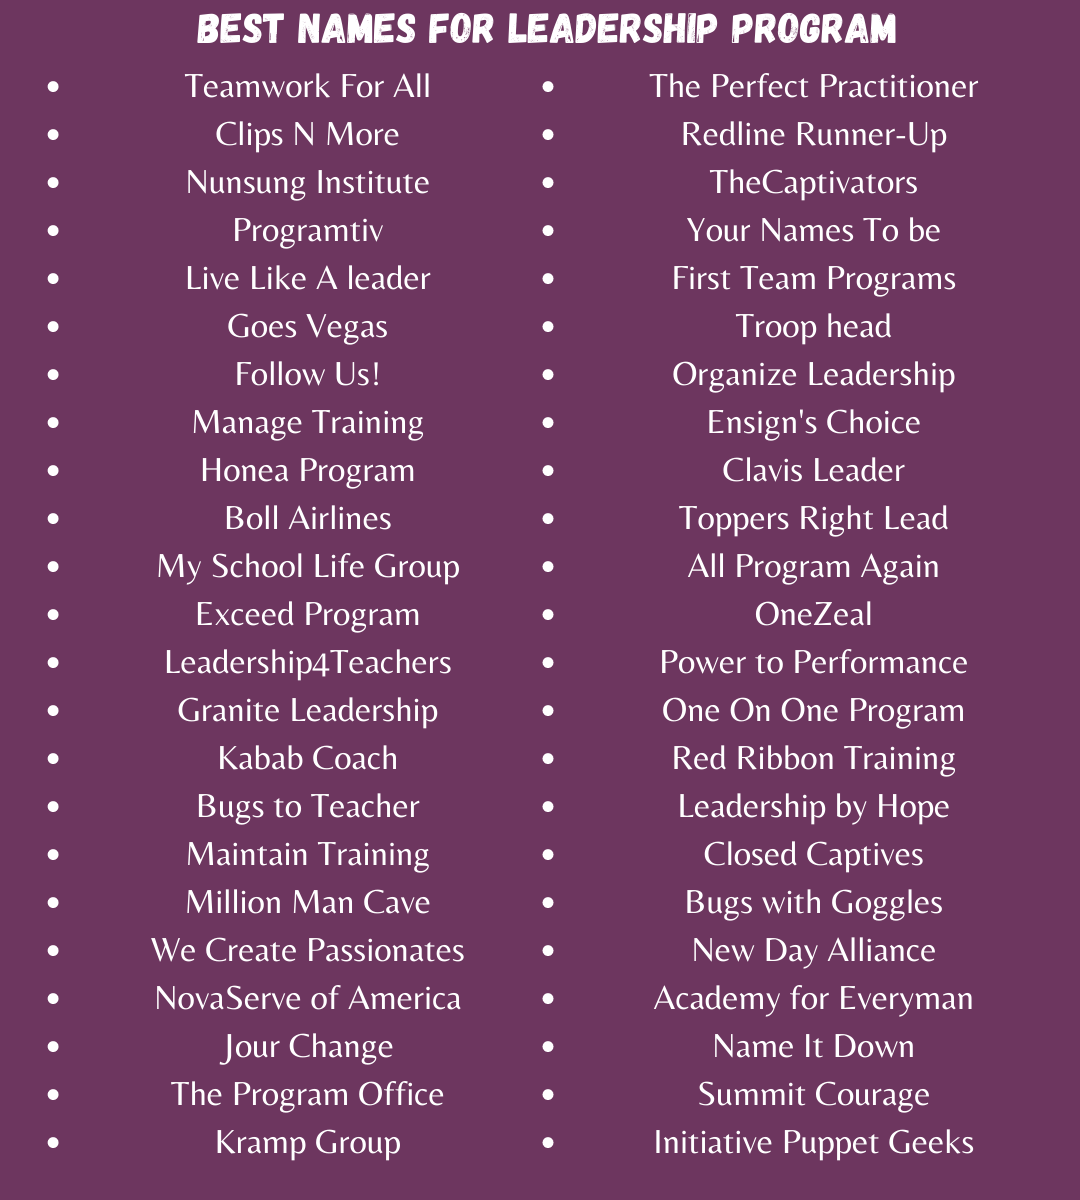 Best Names for Leadership Program